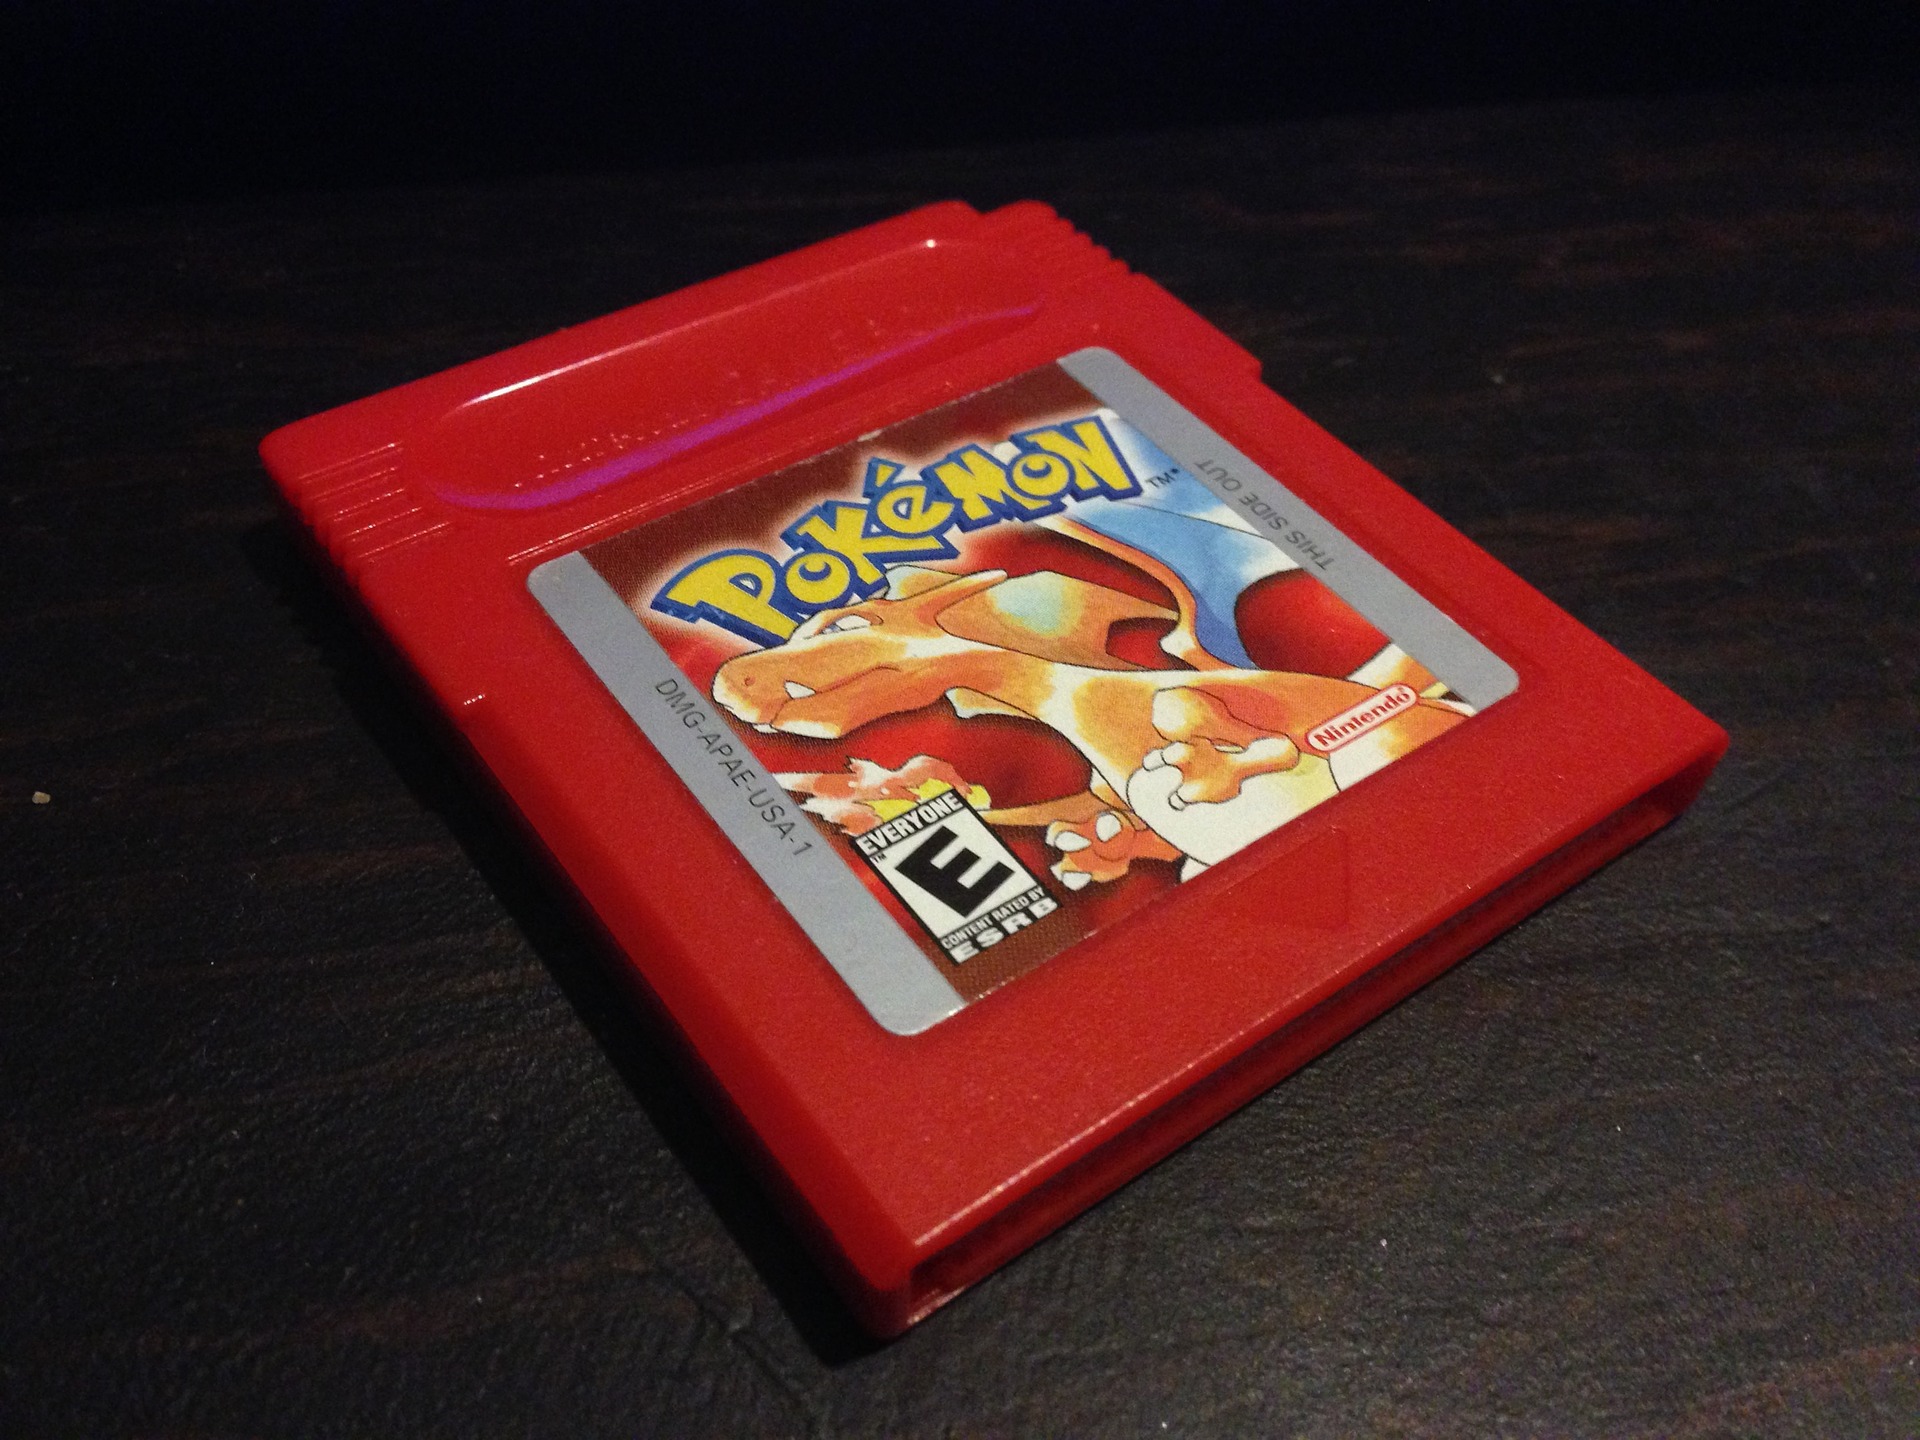 Pokemon je kao globalni fenomen svoju prvu veću trakciju dobio dolaskom Pokemon Red i Blue igara za Game Boy, krajem rujna 1998. godine. S vremenom Pokemoni su postali jedna od najvećih Nintendovih franšiza, koja obuhvaća filmove i kartaške igre. Do danas, svaka Nintendova konzola je dobila barem jedan pokemon naslov, a te igre su uglavnom među najprodavanijima za Nintendove konzole.